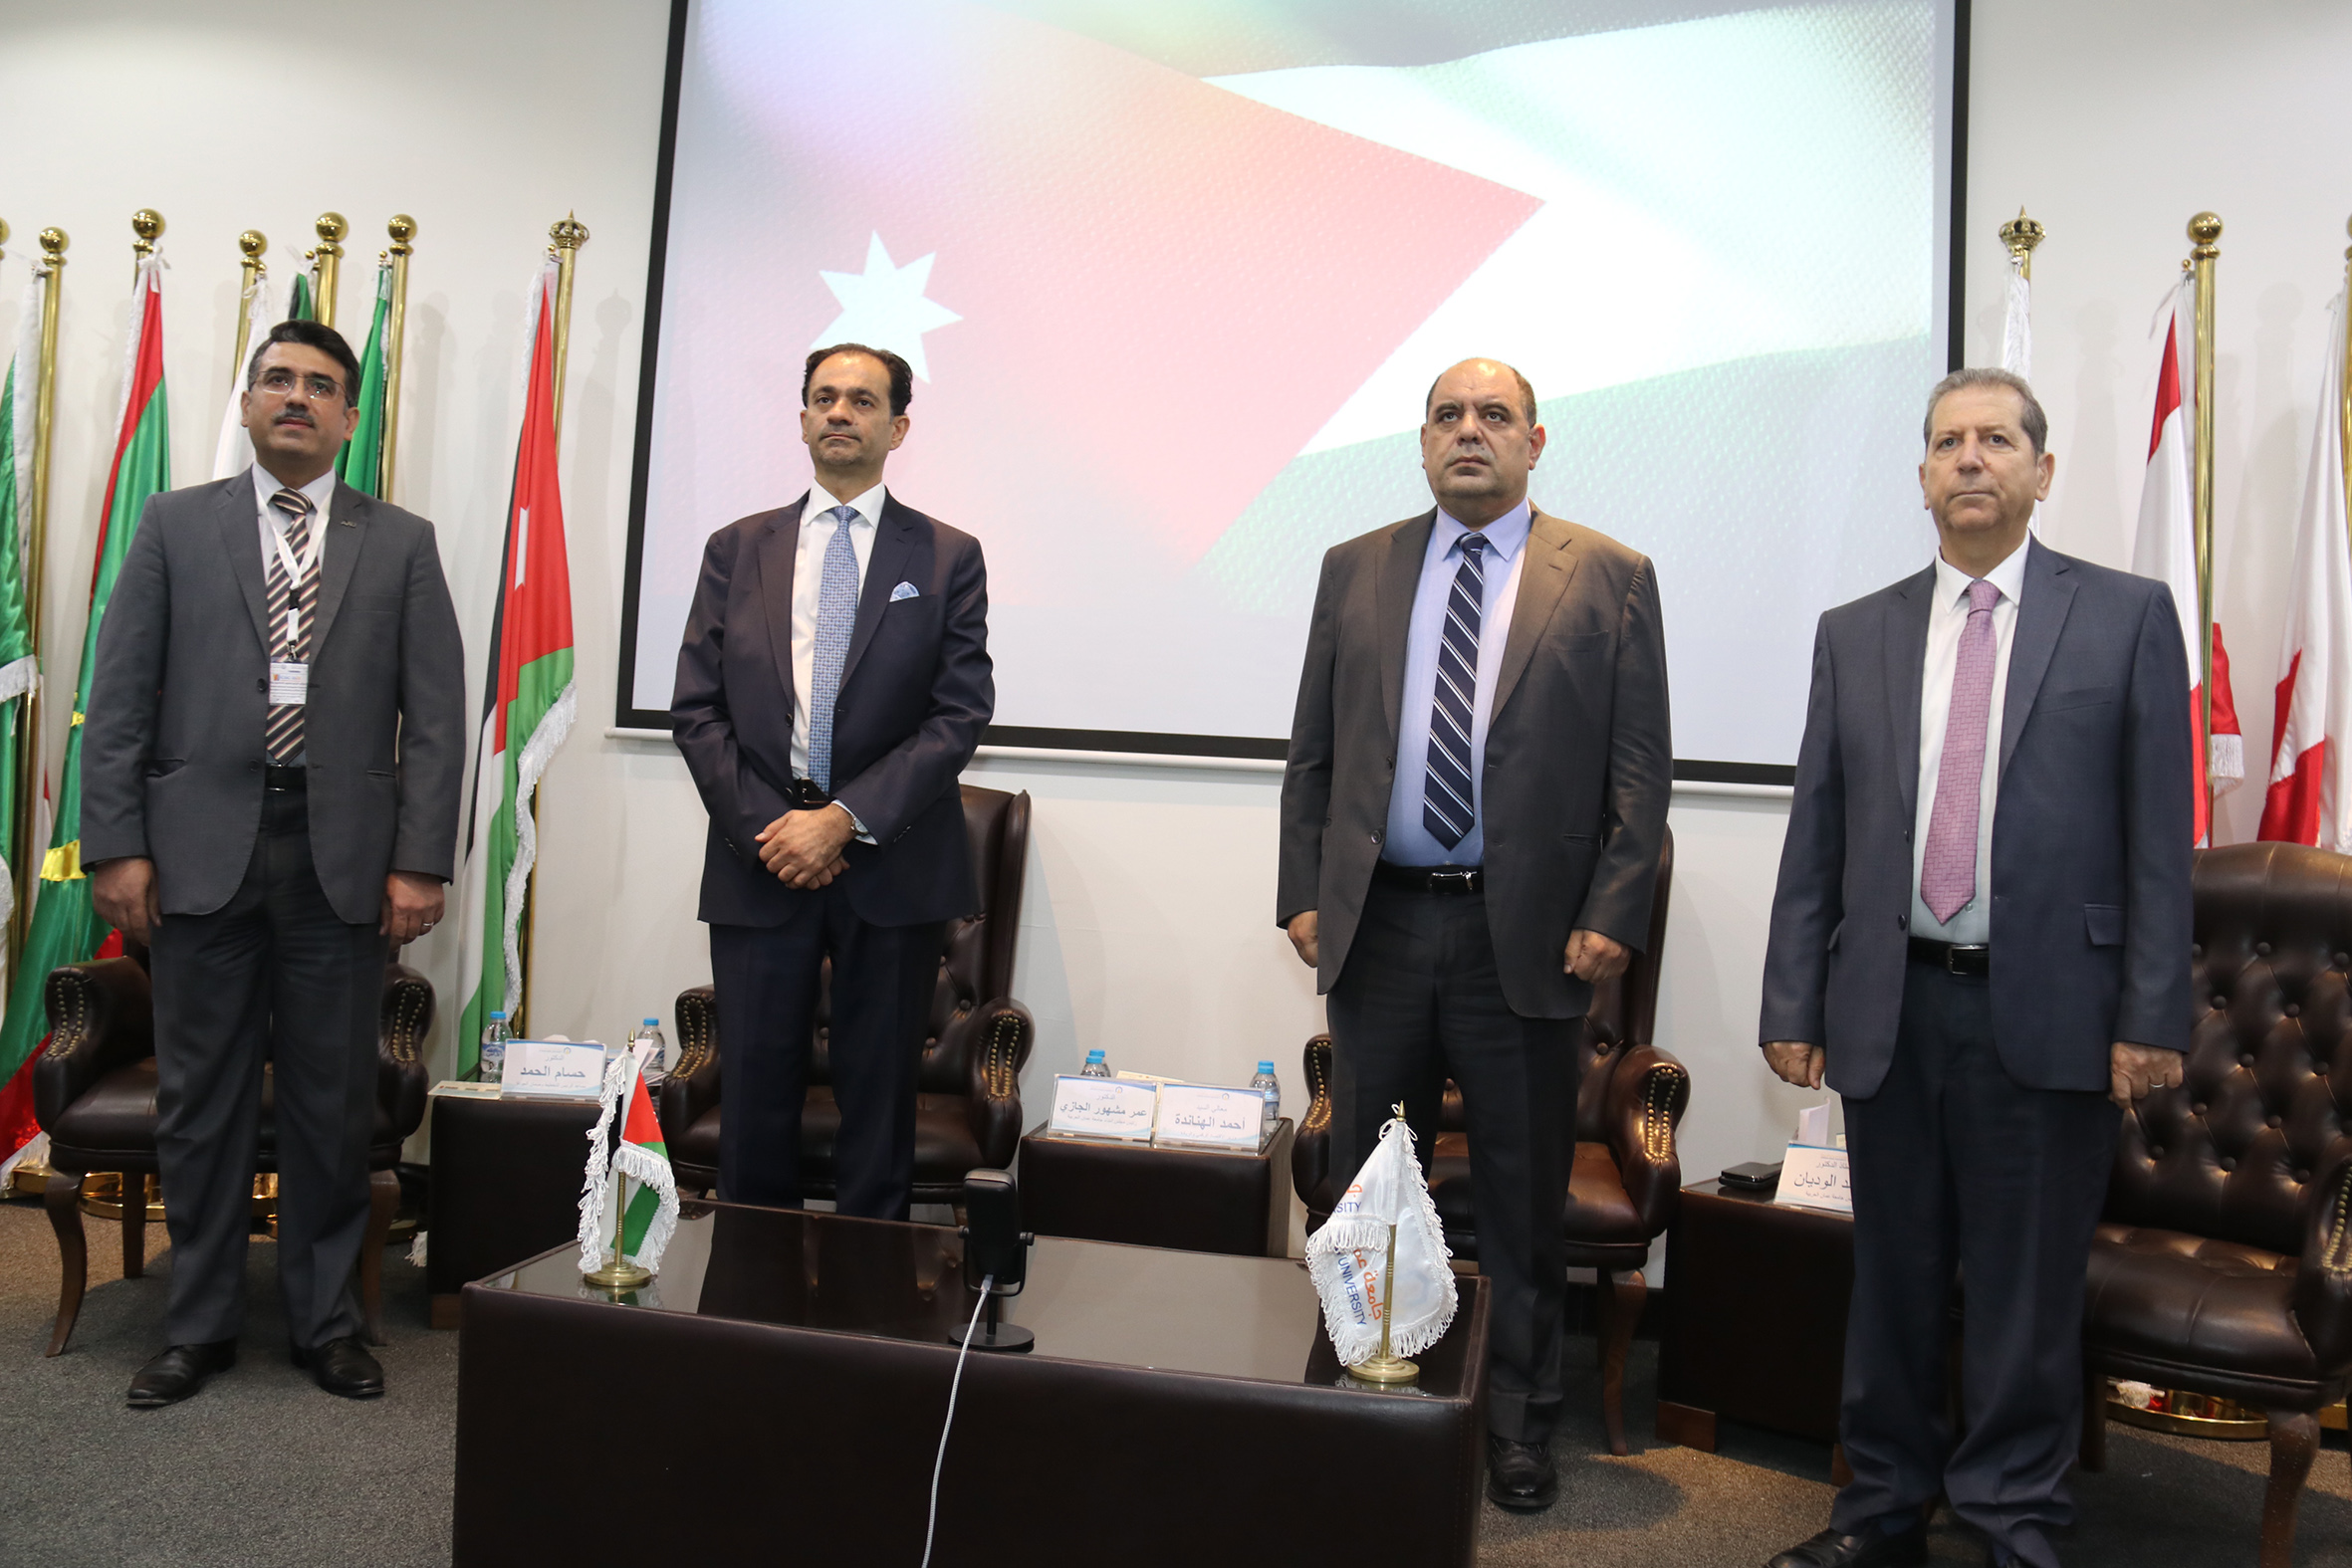 الهناندة يرعى افتتاح فعاليات المؤتمر الدولي الرابع في العلوم الحاسوبية والمعلوماتية في "عمان العربية"2